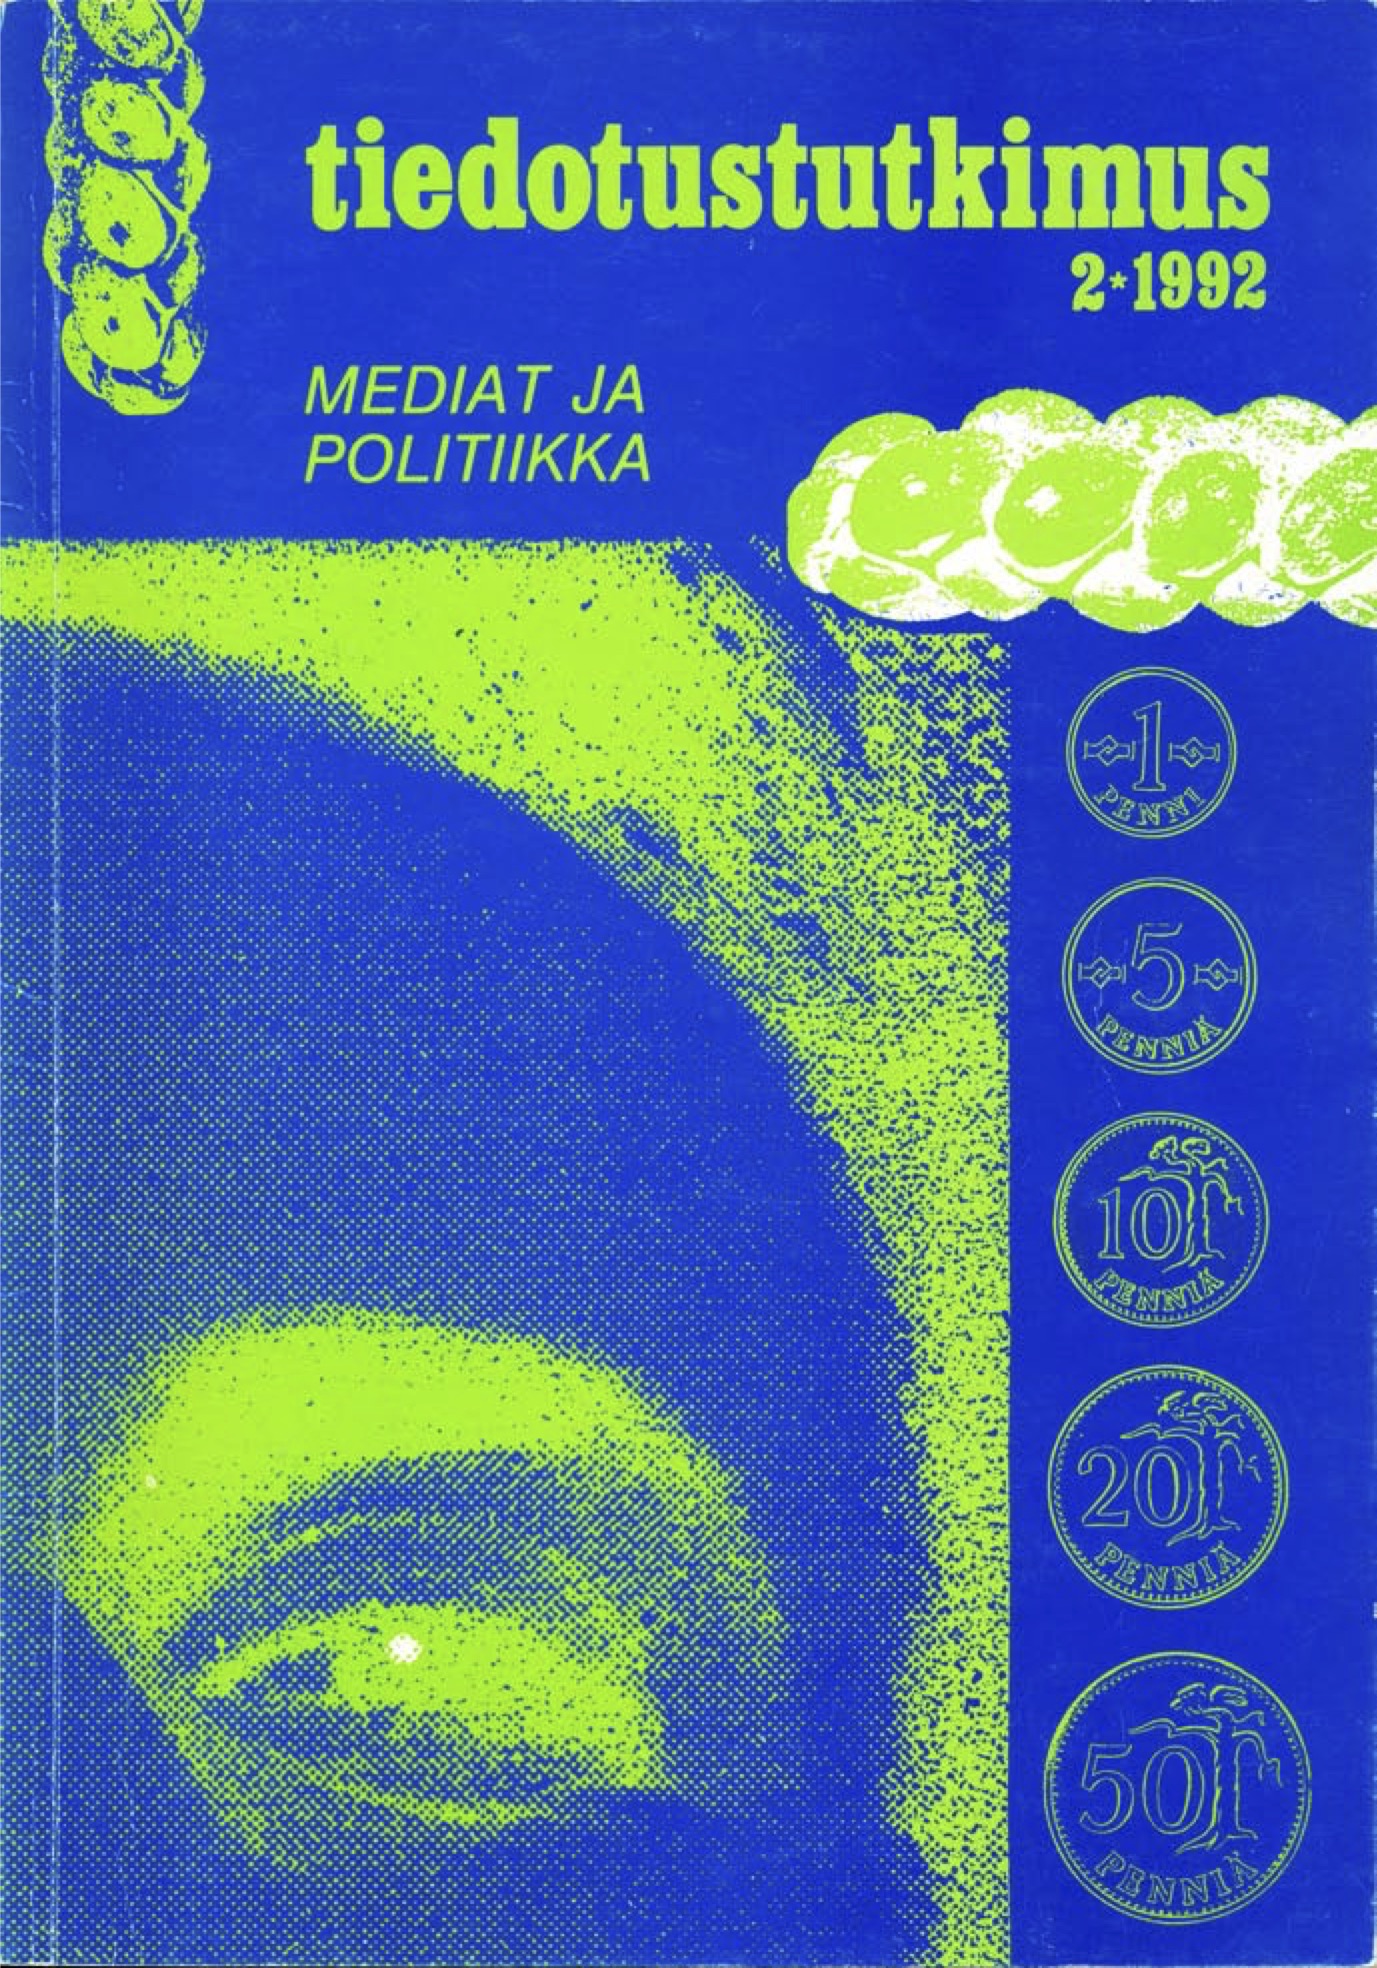 					Näytä Vol 15 Nro 2 (1992)
				